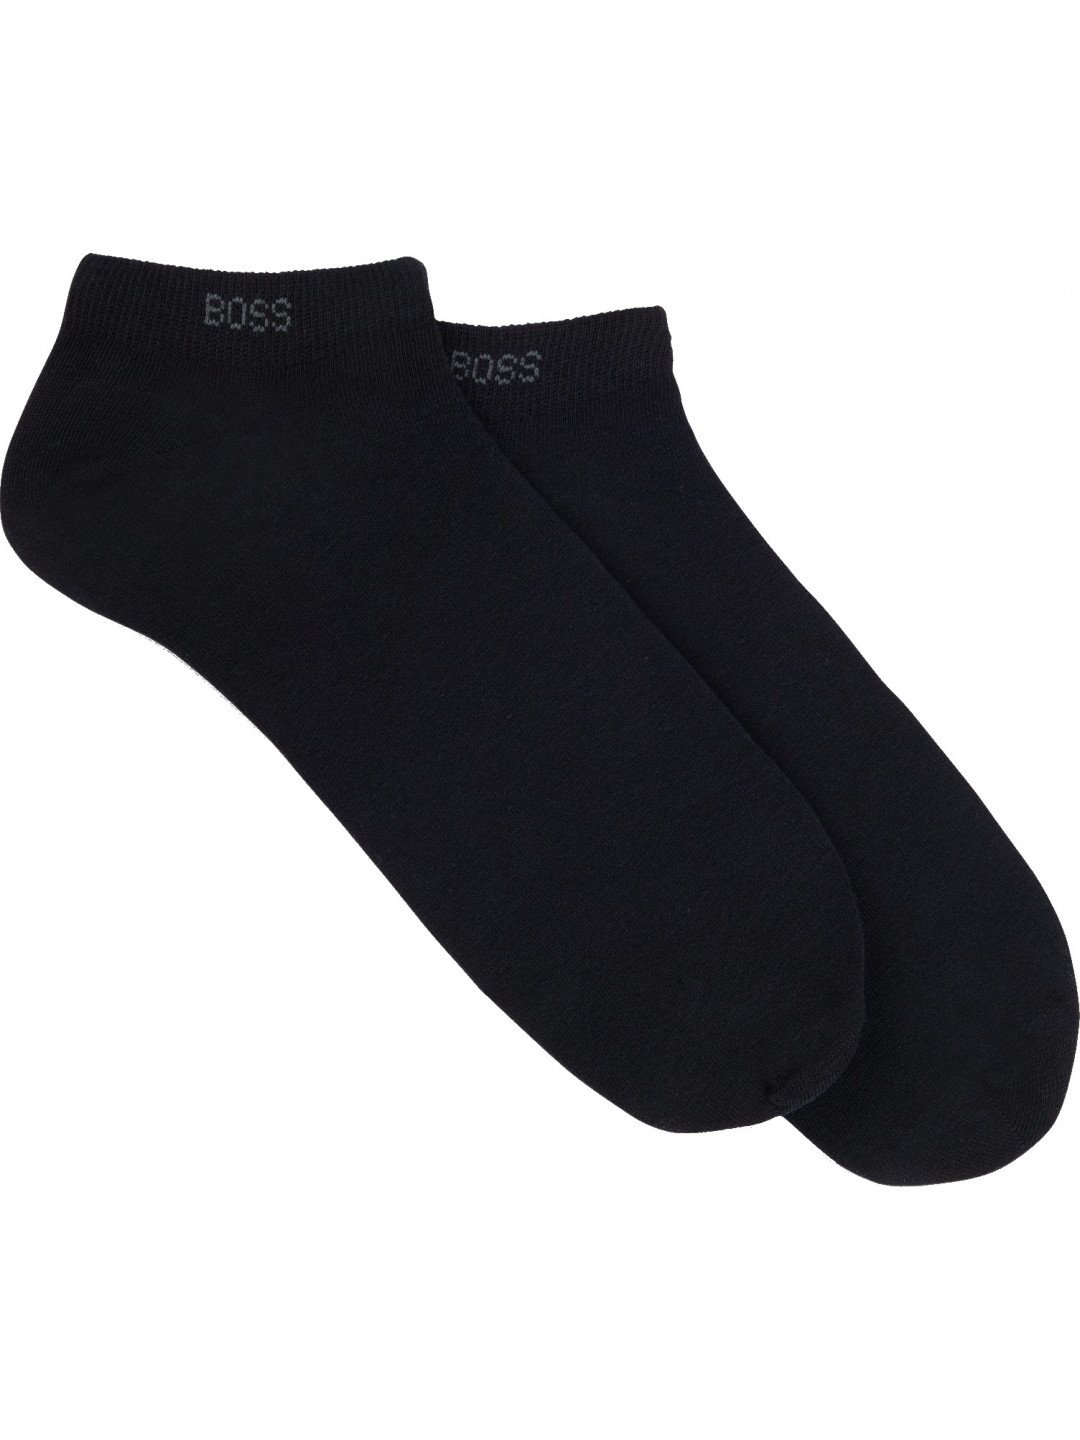 Hugo Boss 2 PACK – pánské ponožky BOSS 50469849-001 43-46